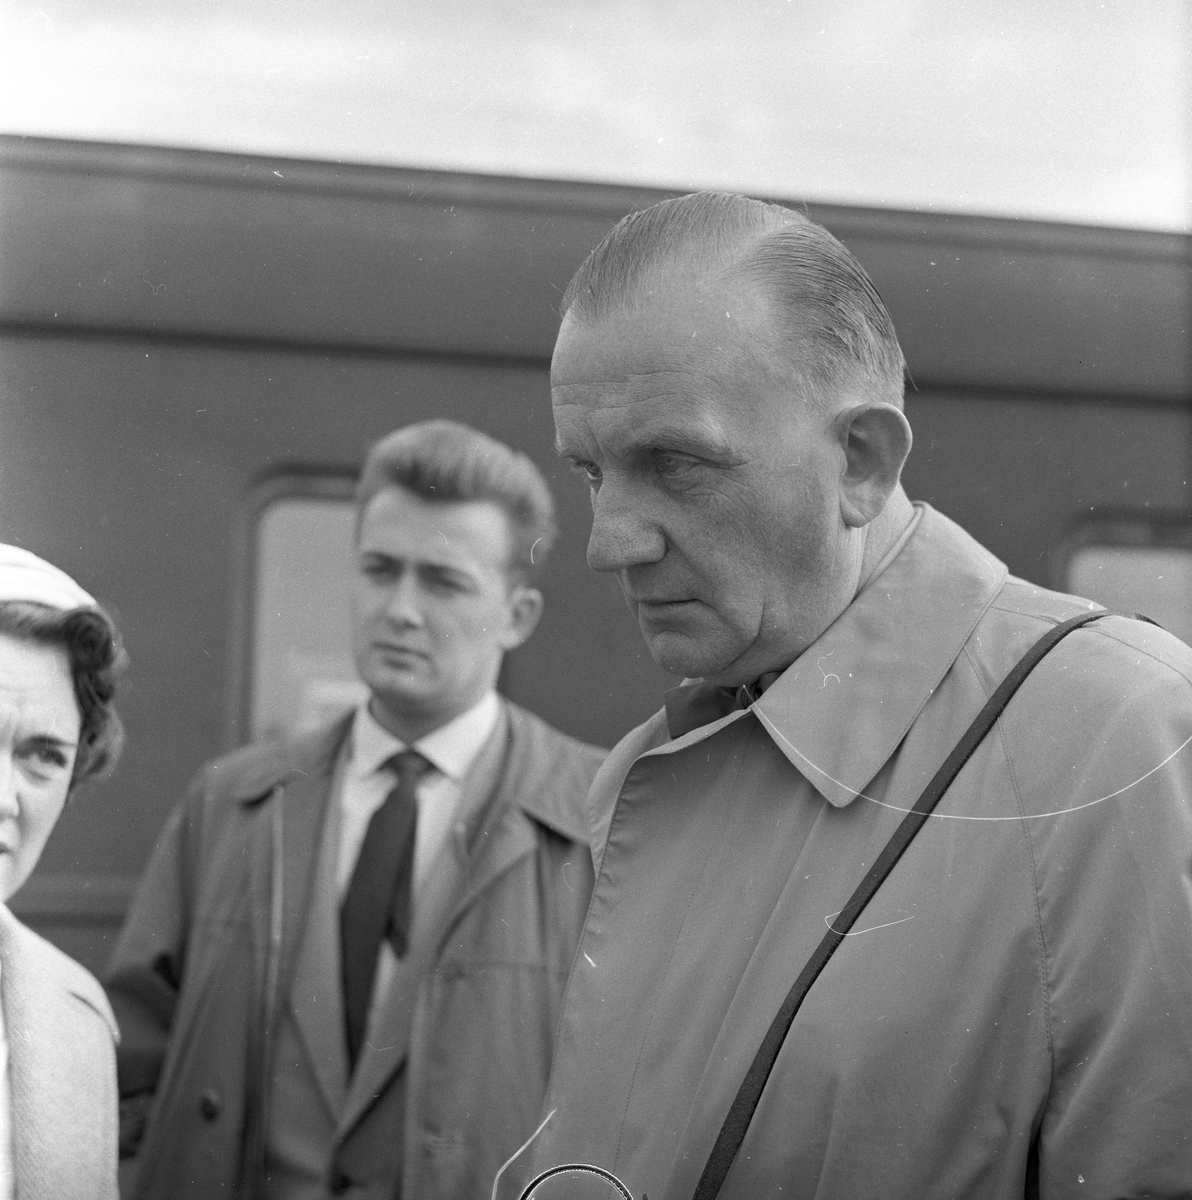 Kvinner og menn fra "Det danske radiokor" på en jernbanestasjon. Fotografert mai 1959